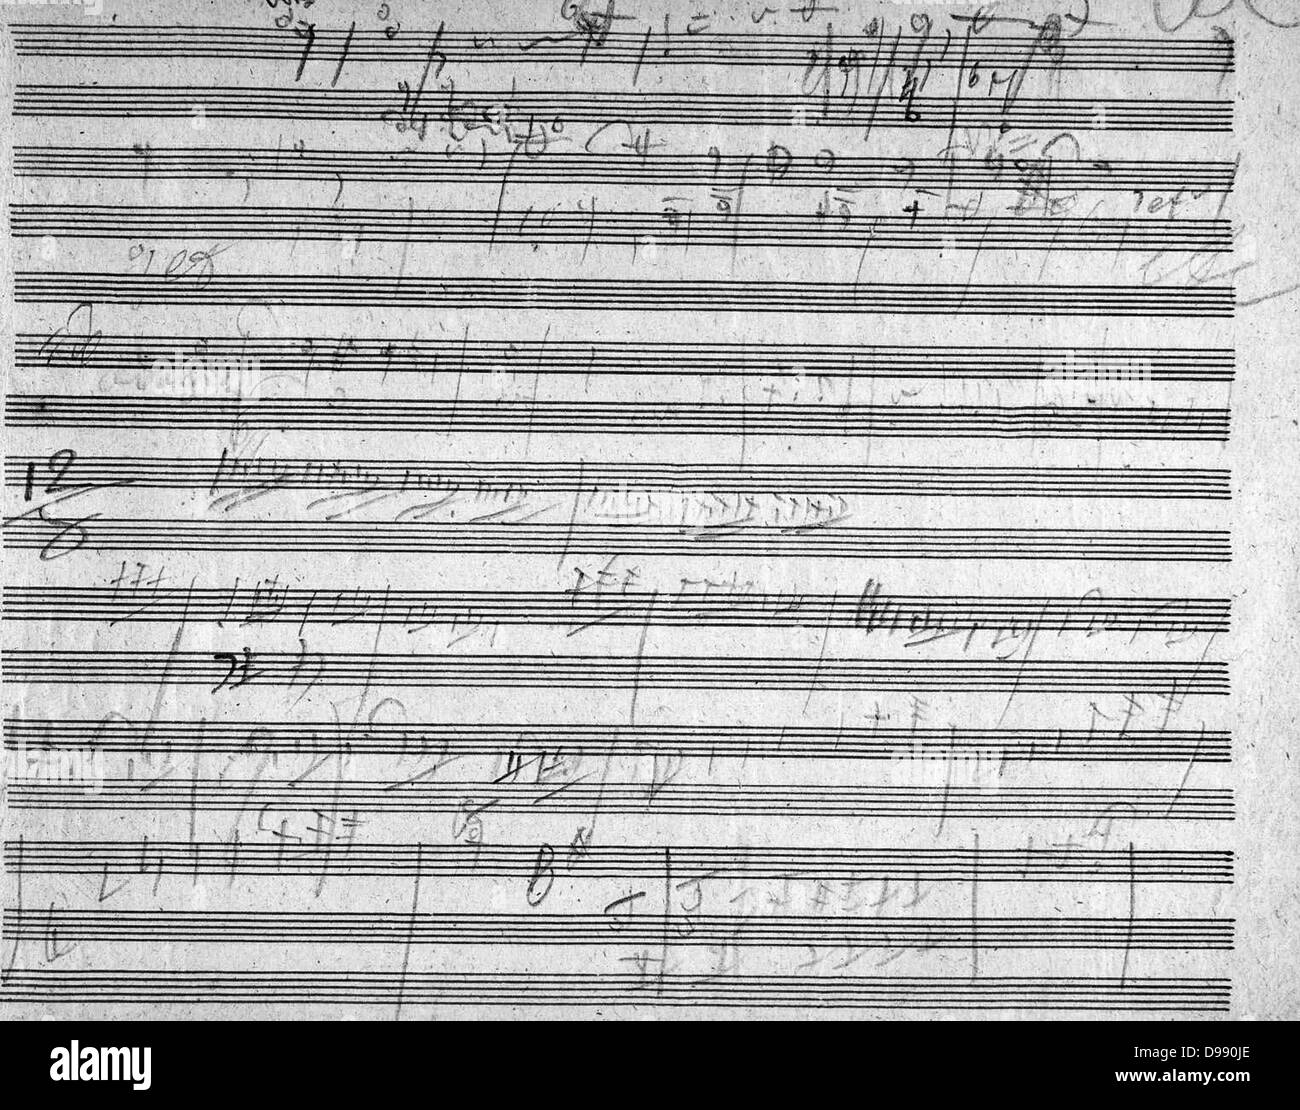 Ludwig van Beethoven (16 dicembre 1770- 26 marzo 1827) era un compositore tedesco e il pianista. Egli è stato una figura fondamentale nel periodo transitorio tra la classica e romantica epoche la musica classica occidentale e rimane uno dei più acclamati e influenti compositori di tutti i tempi.ritratto da W.J. Mähler nel 1804 Foto Stock